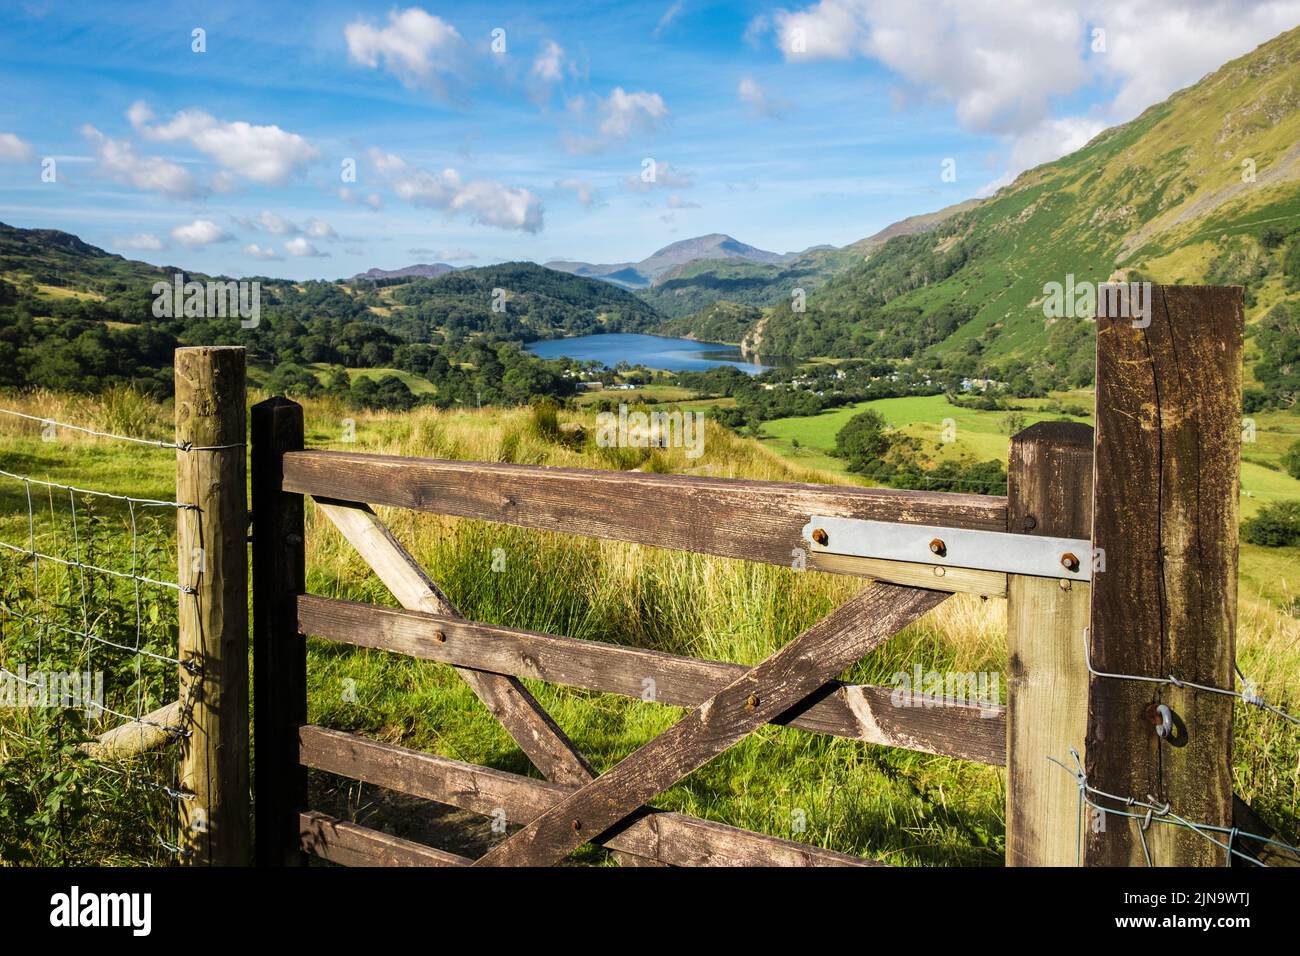 Vue panoramique sur la porte le long de la vallée de Nant Gwynant jusqu'au lac Llyn Gwynant et campez dans le parc national de Snowdonia. Nantgwynant Beddgelert Gwynedd pays de Galles Royaume-Uni Banque D'Images